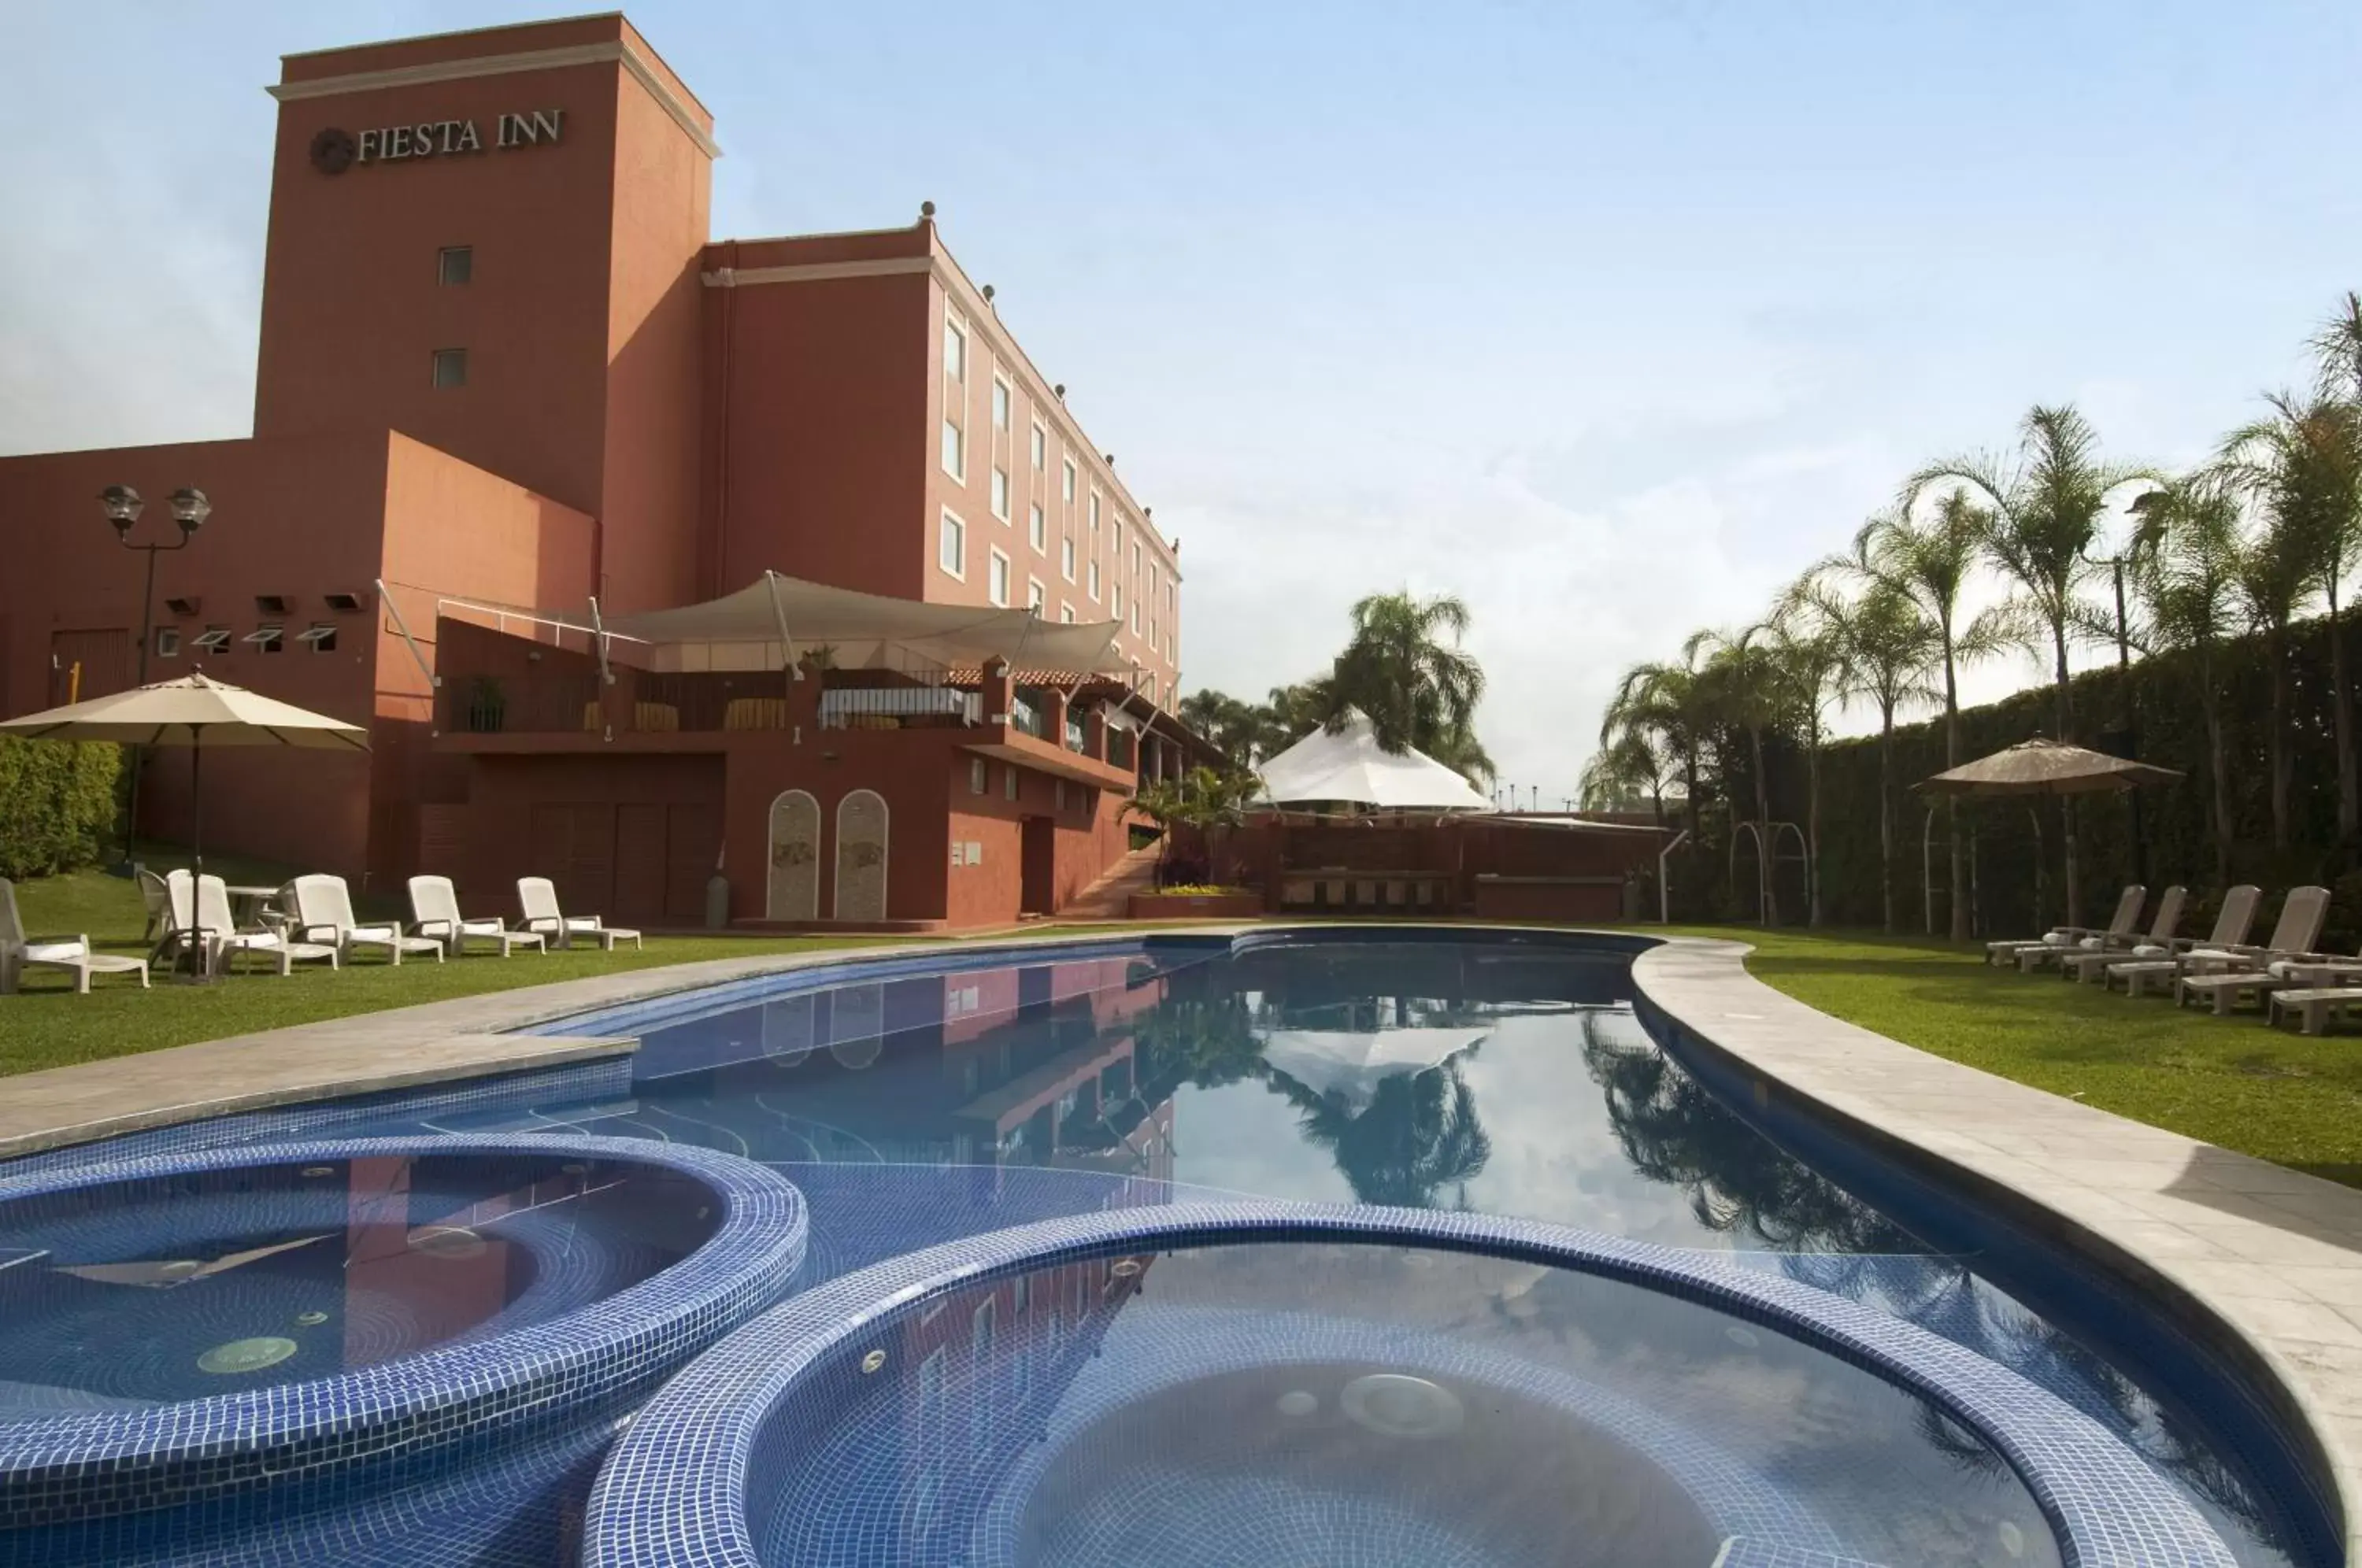 Swimming pool, Property Building in Fiesta Inn Cuernavaca